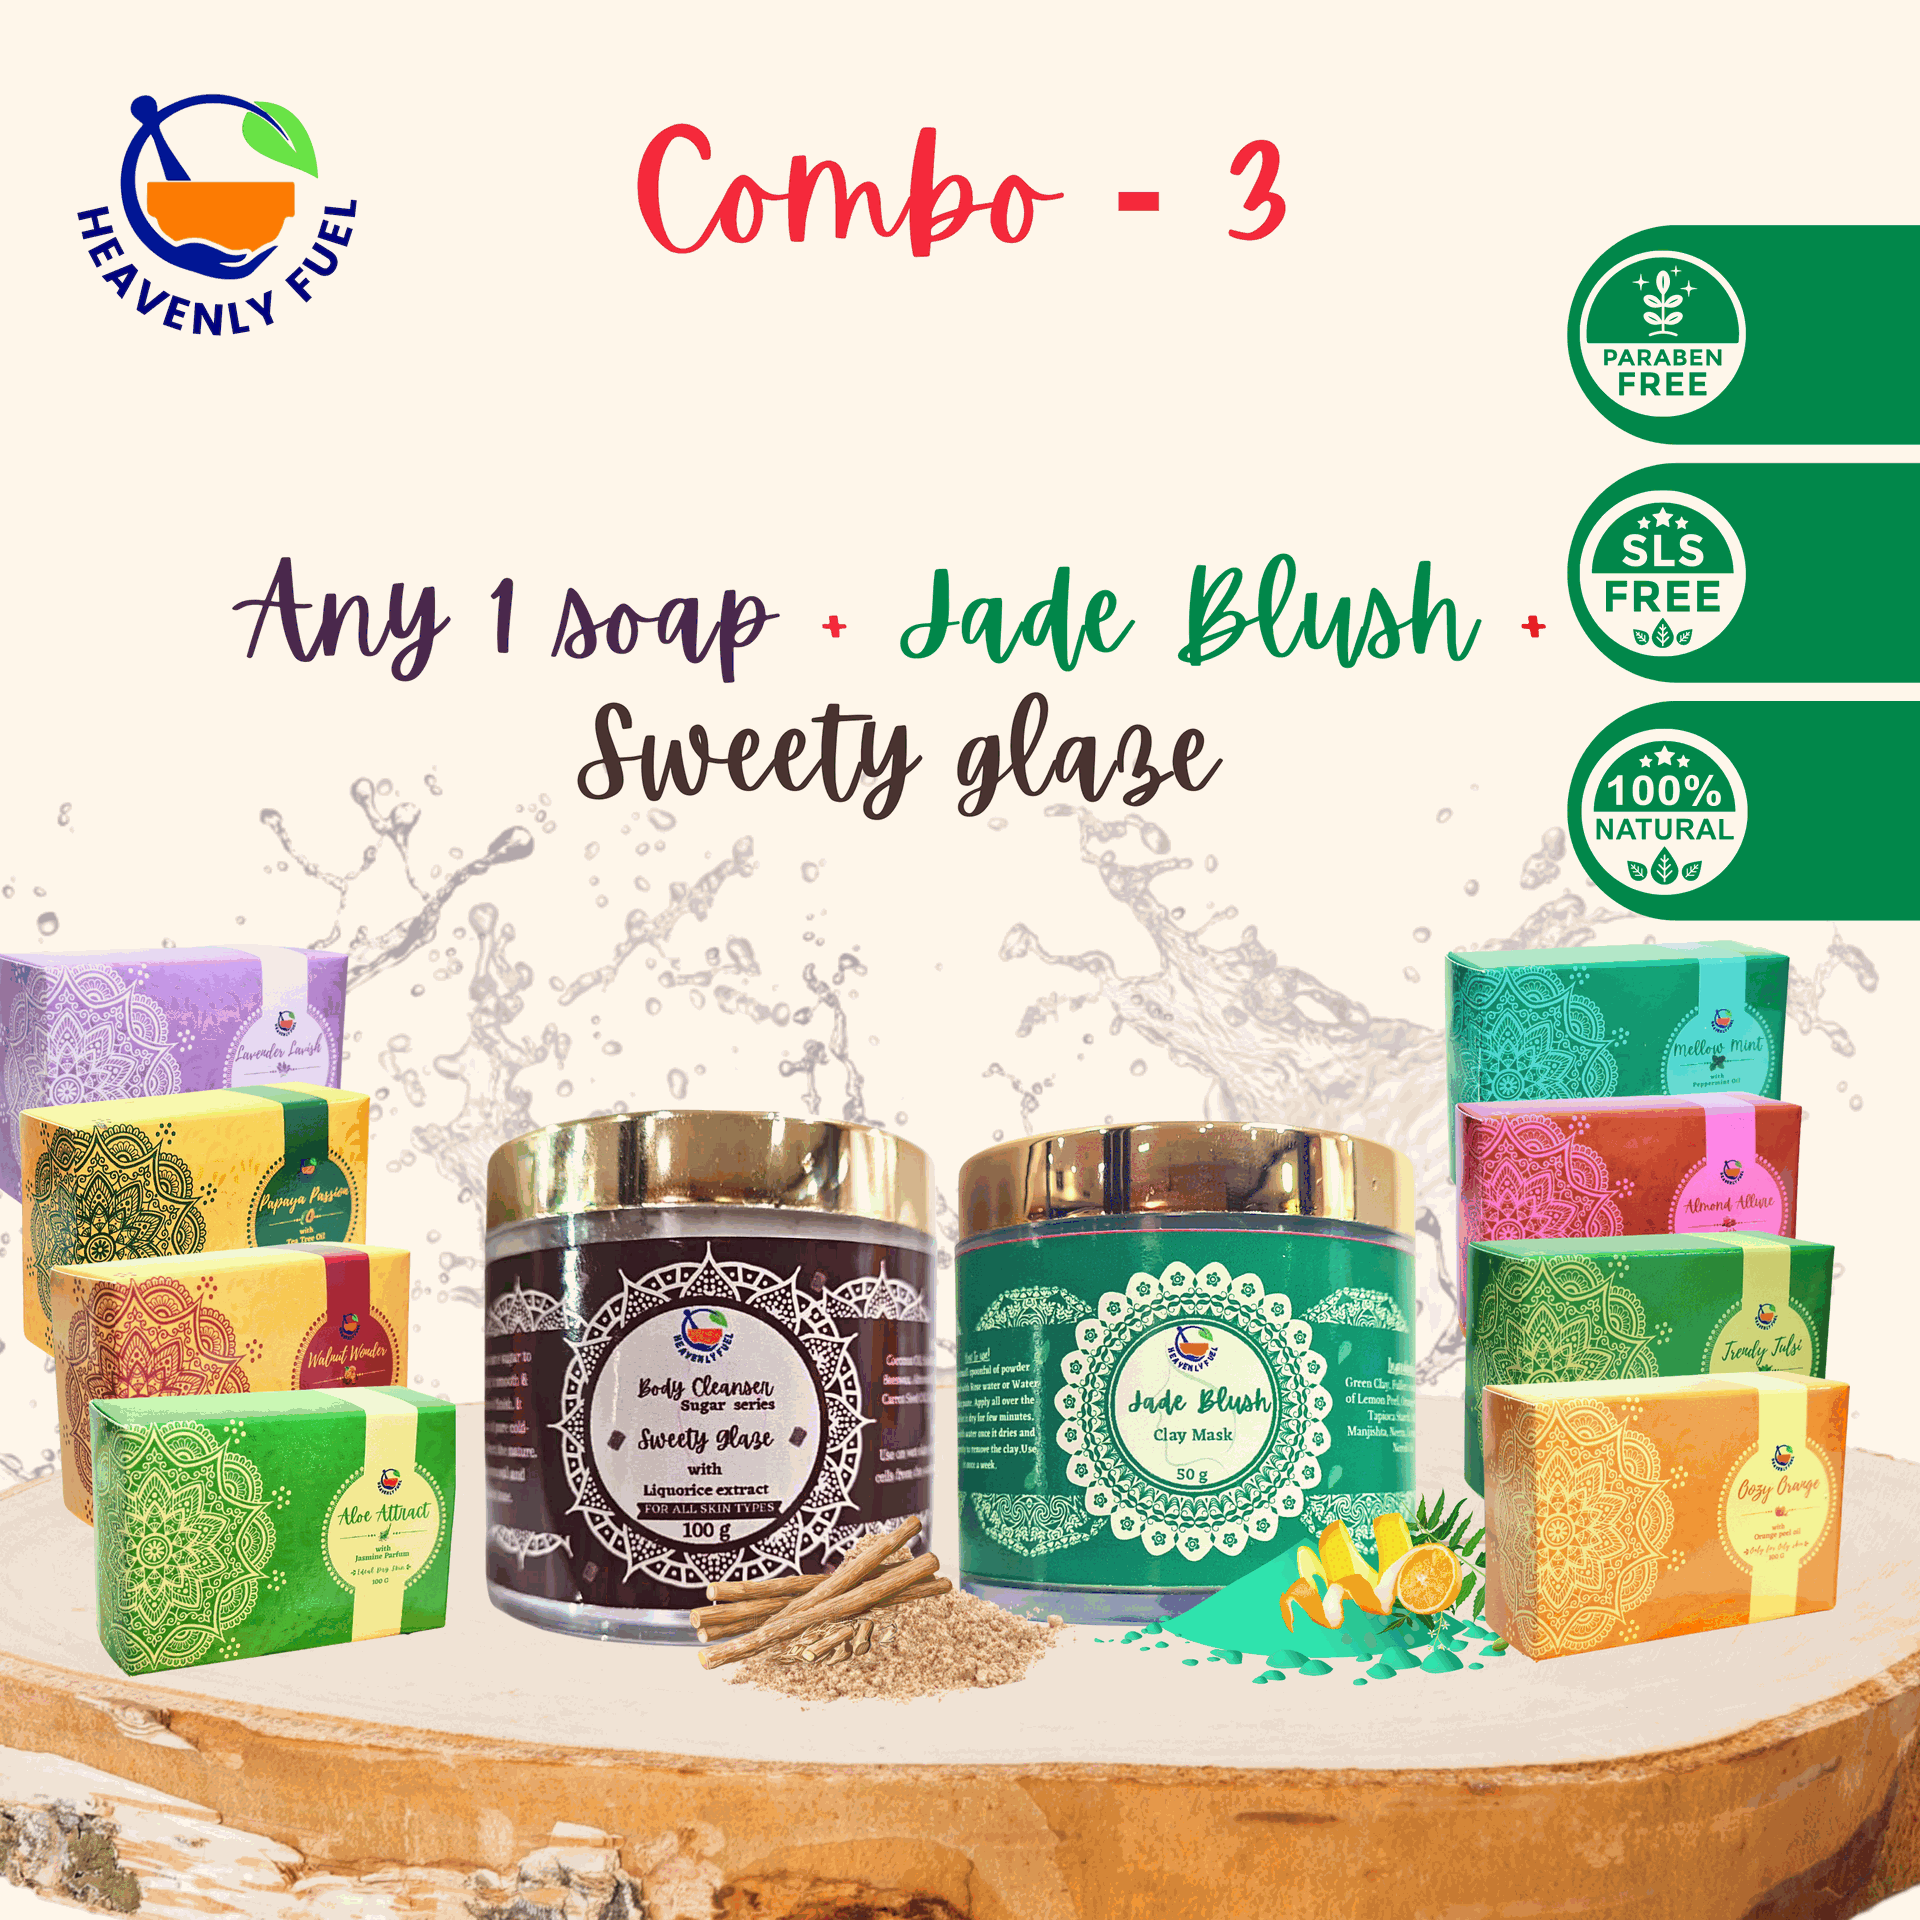 Jade blush 50g |Any1 Handmade Butter soap 100g|Sweety Glaze 100g|Combo - 3 - hfnl!fe